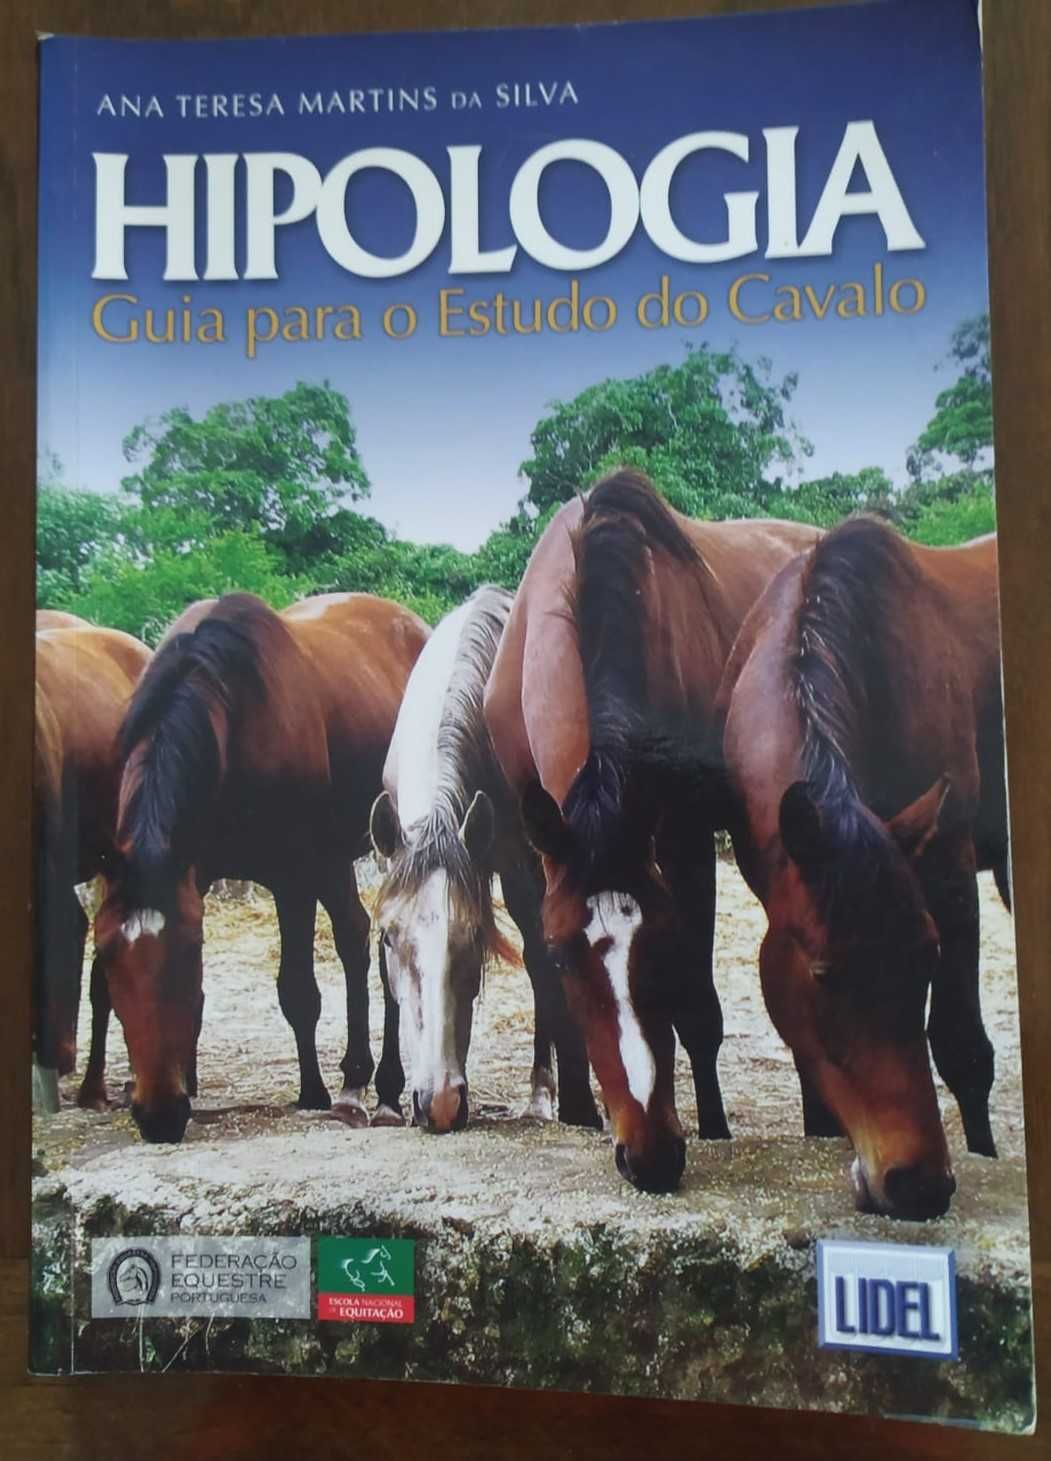 Hipologia, Guia para o Estudo do Cavalo